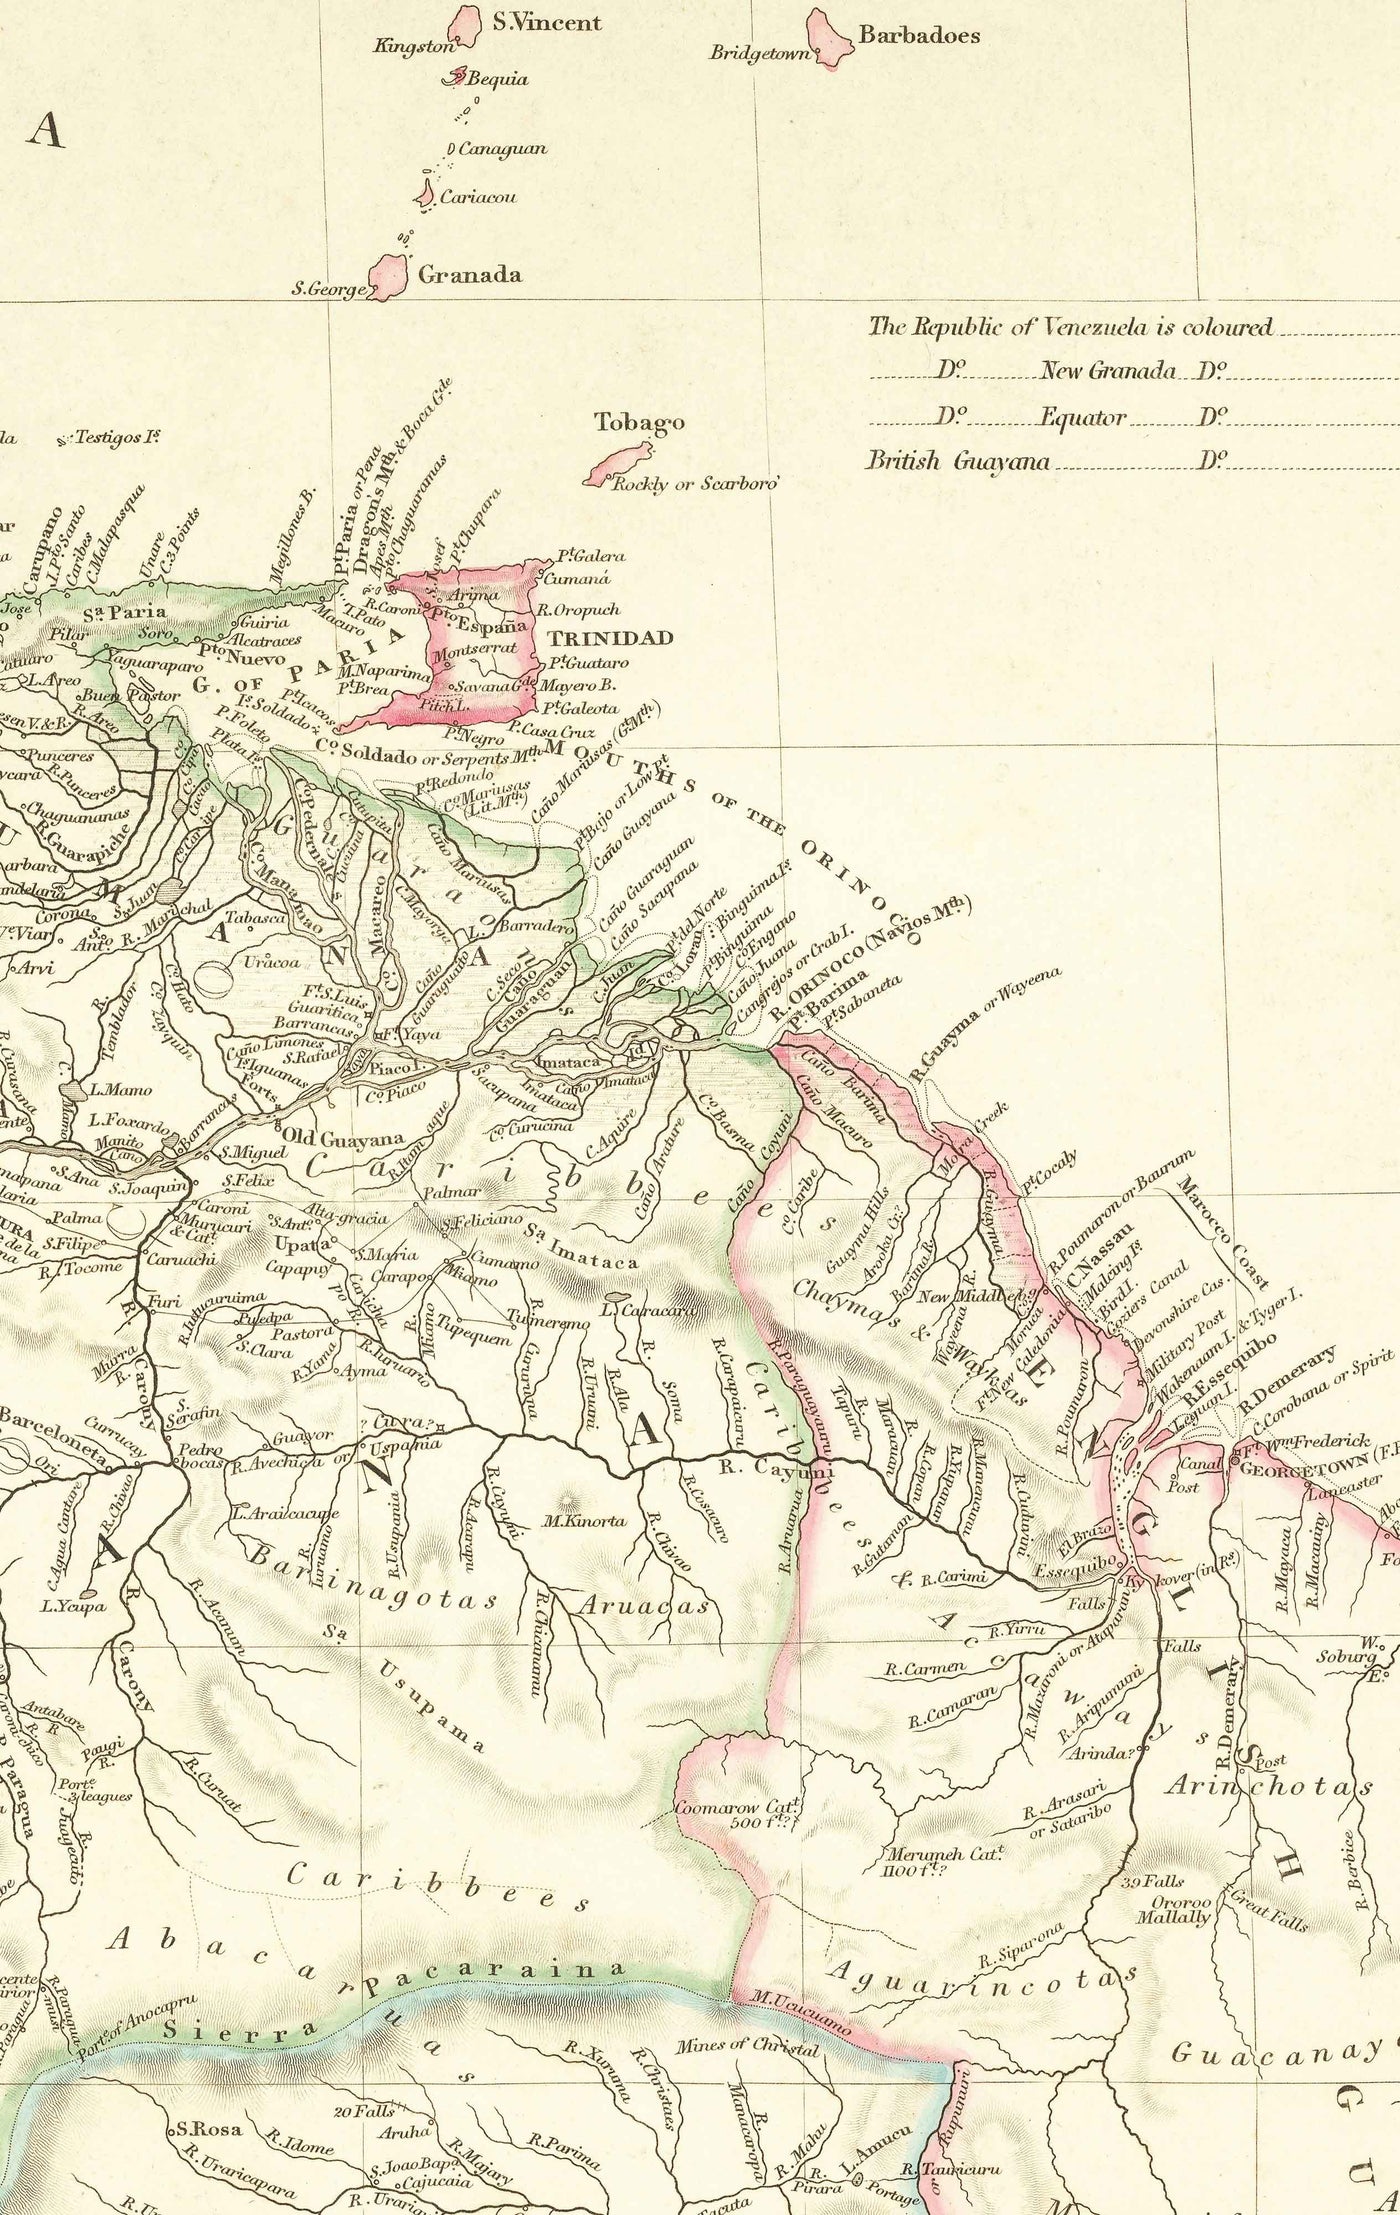 Old Map of Colombia, 1834 by Arrowsmith - Gran Colombia, Venezuela, Ecuador, Peru, Caribbean, Panama